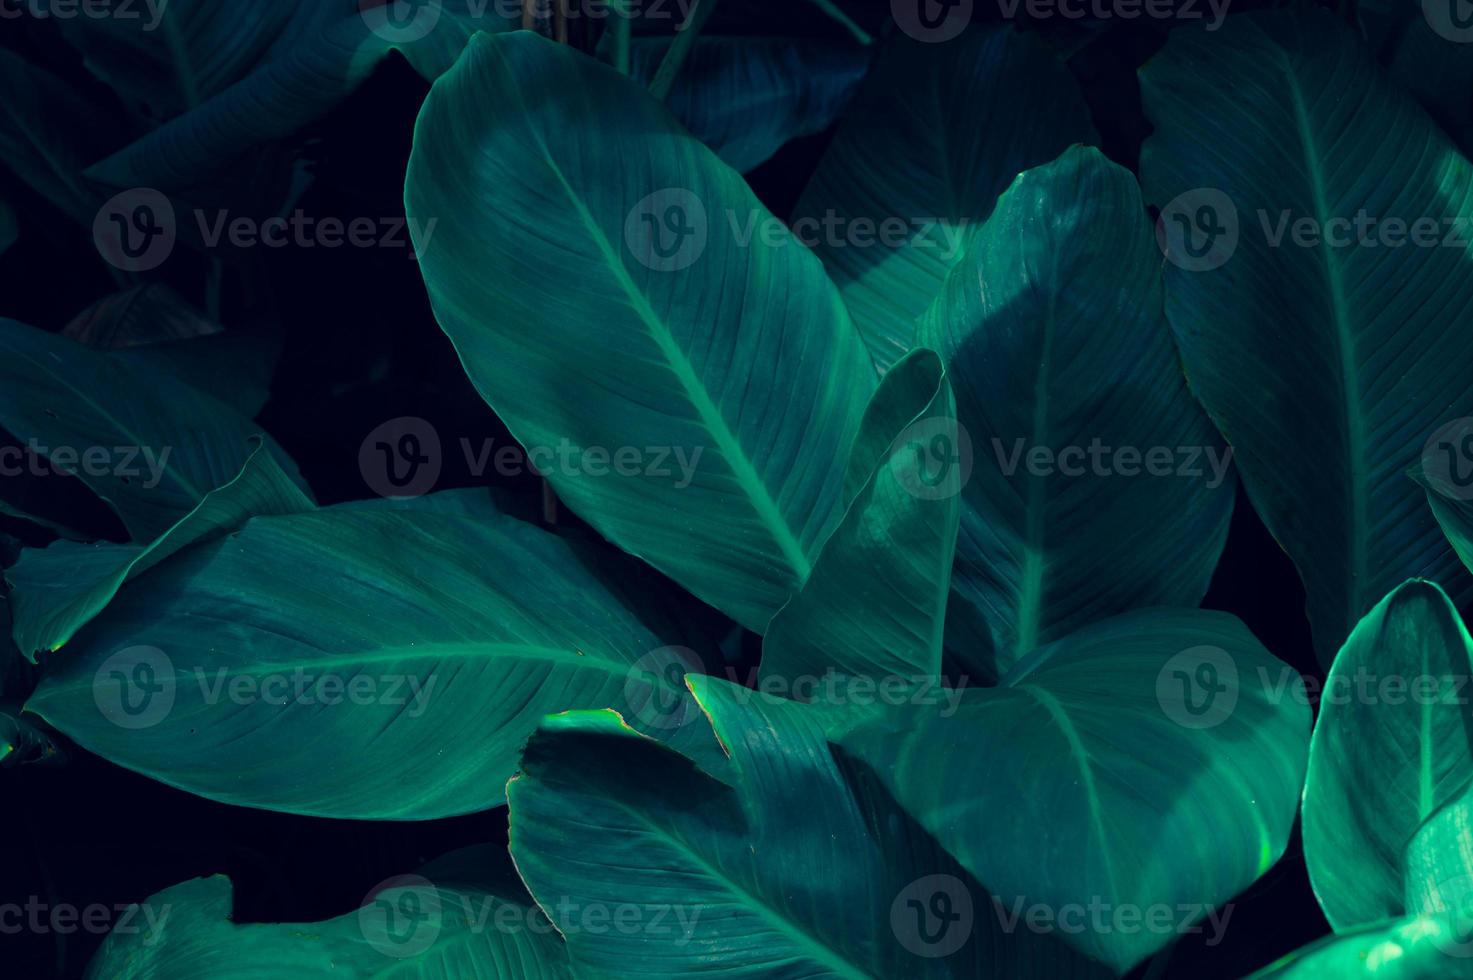 feuilles calathea ornata pin stripe arrière plan bleu photo